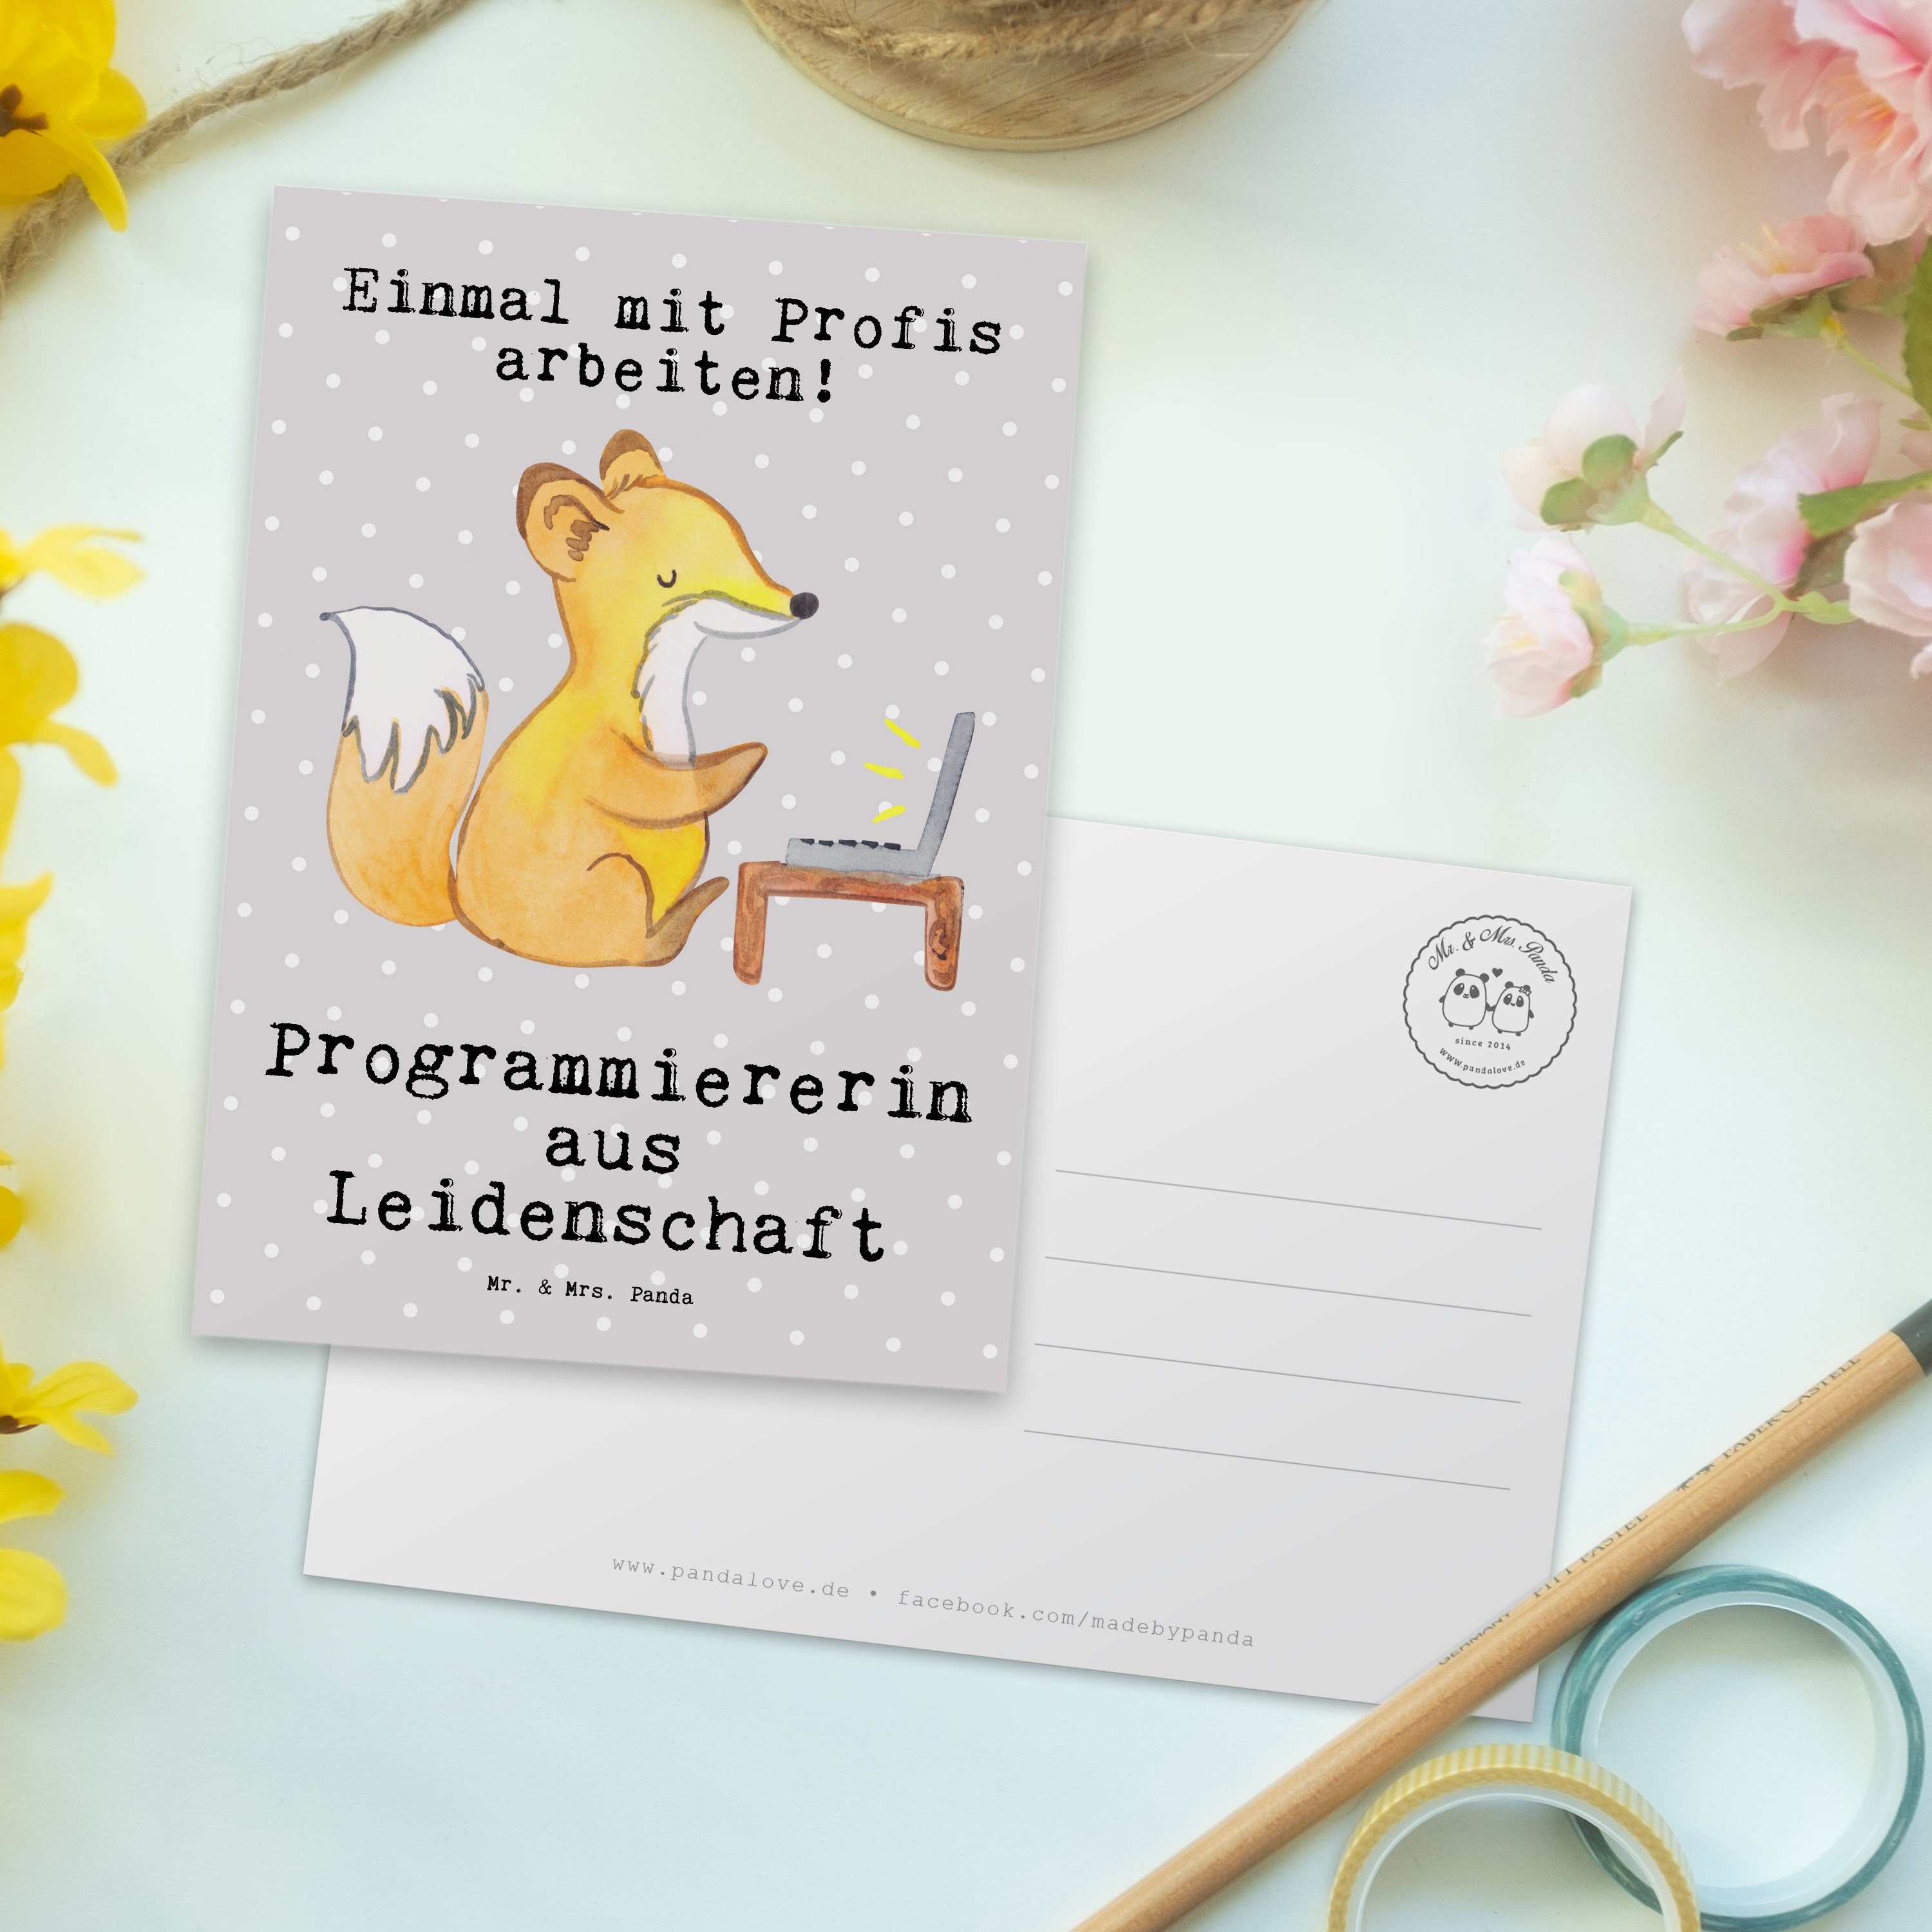 Mr. l - Grau Panda & aus Postkarte Problem Geschenk, Pastell Programmiererin Leidenschaft - Mrs.